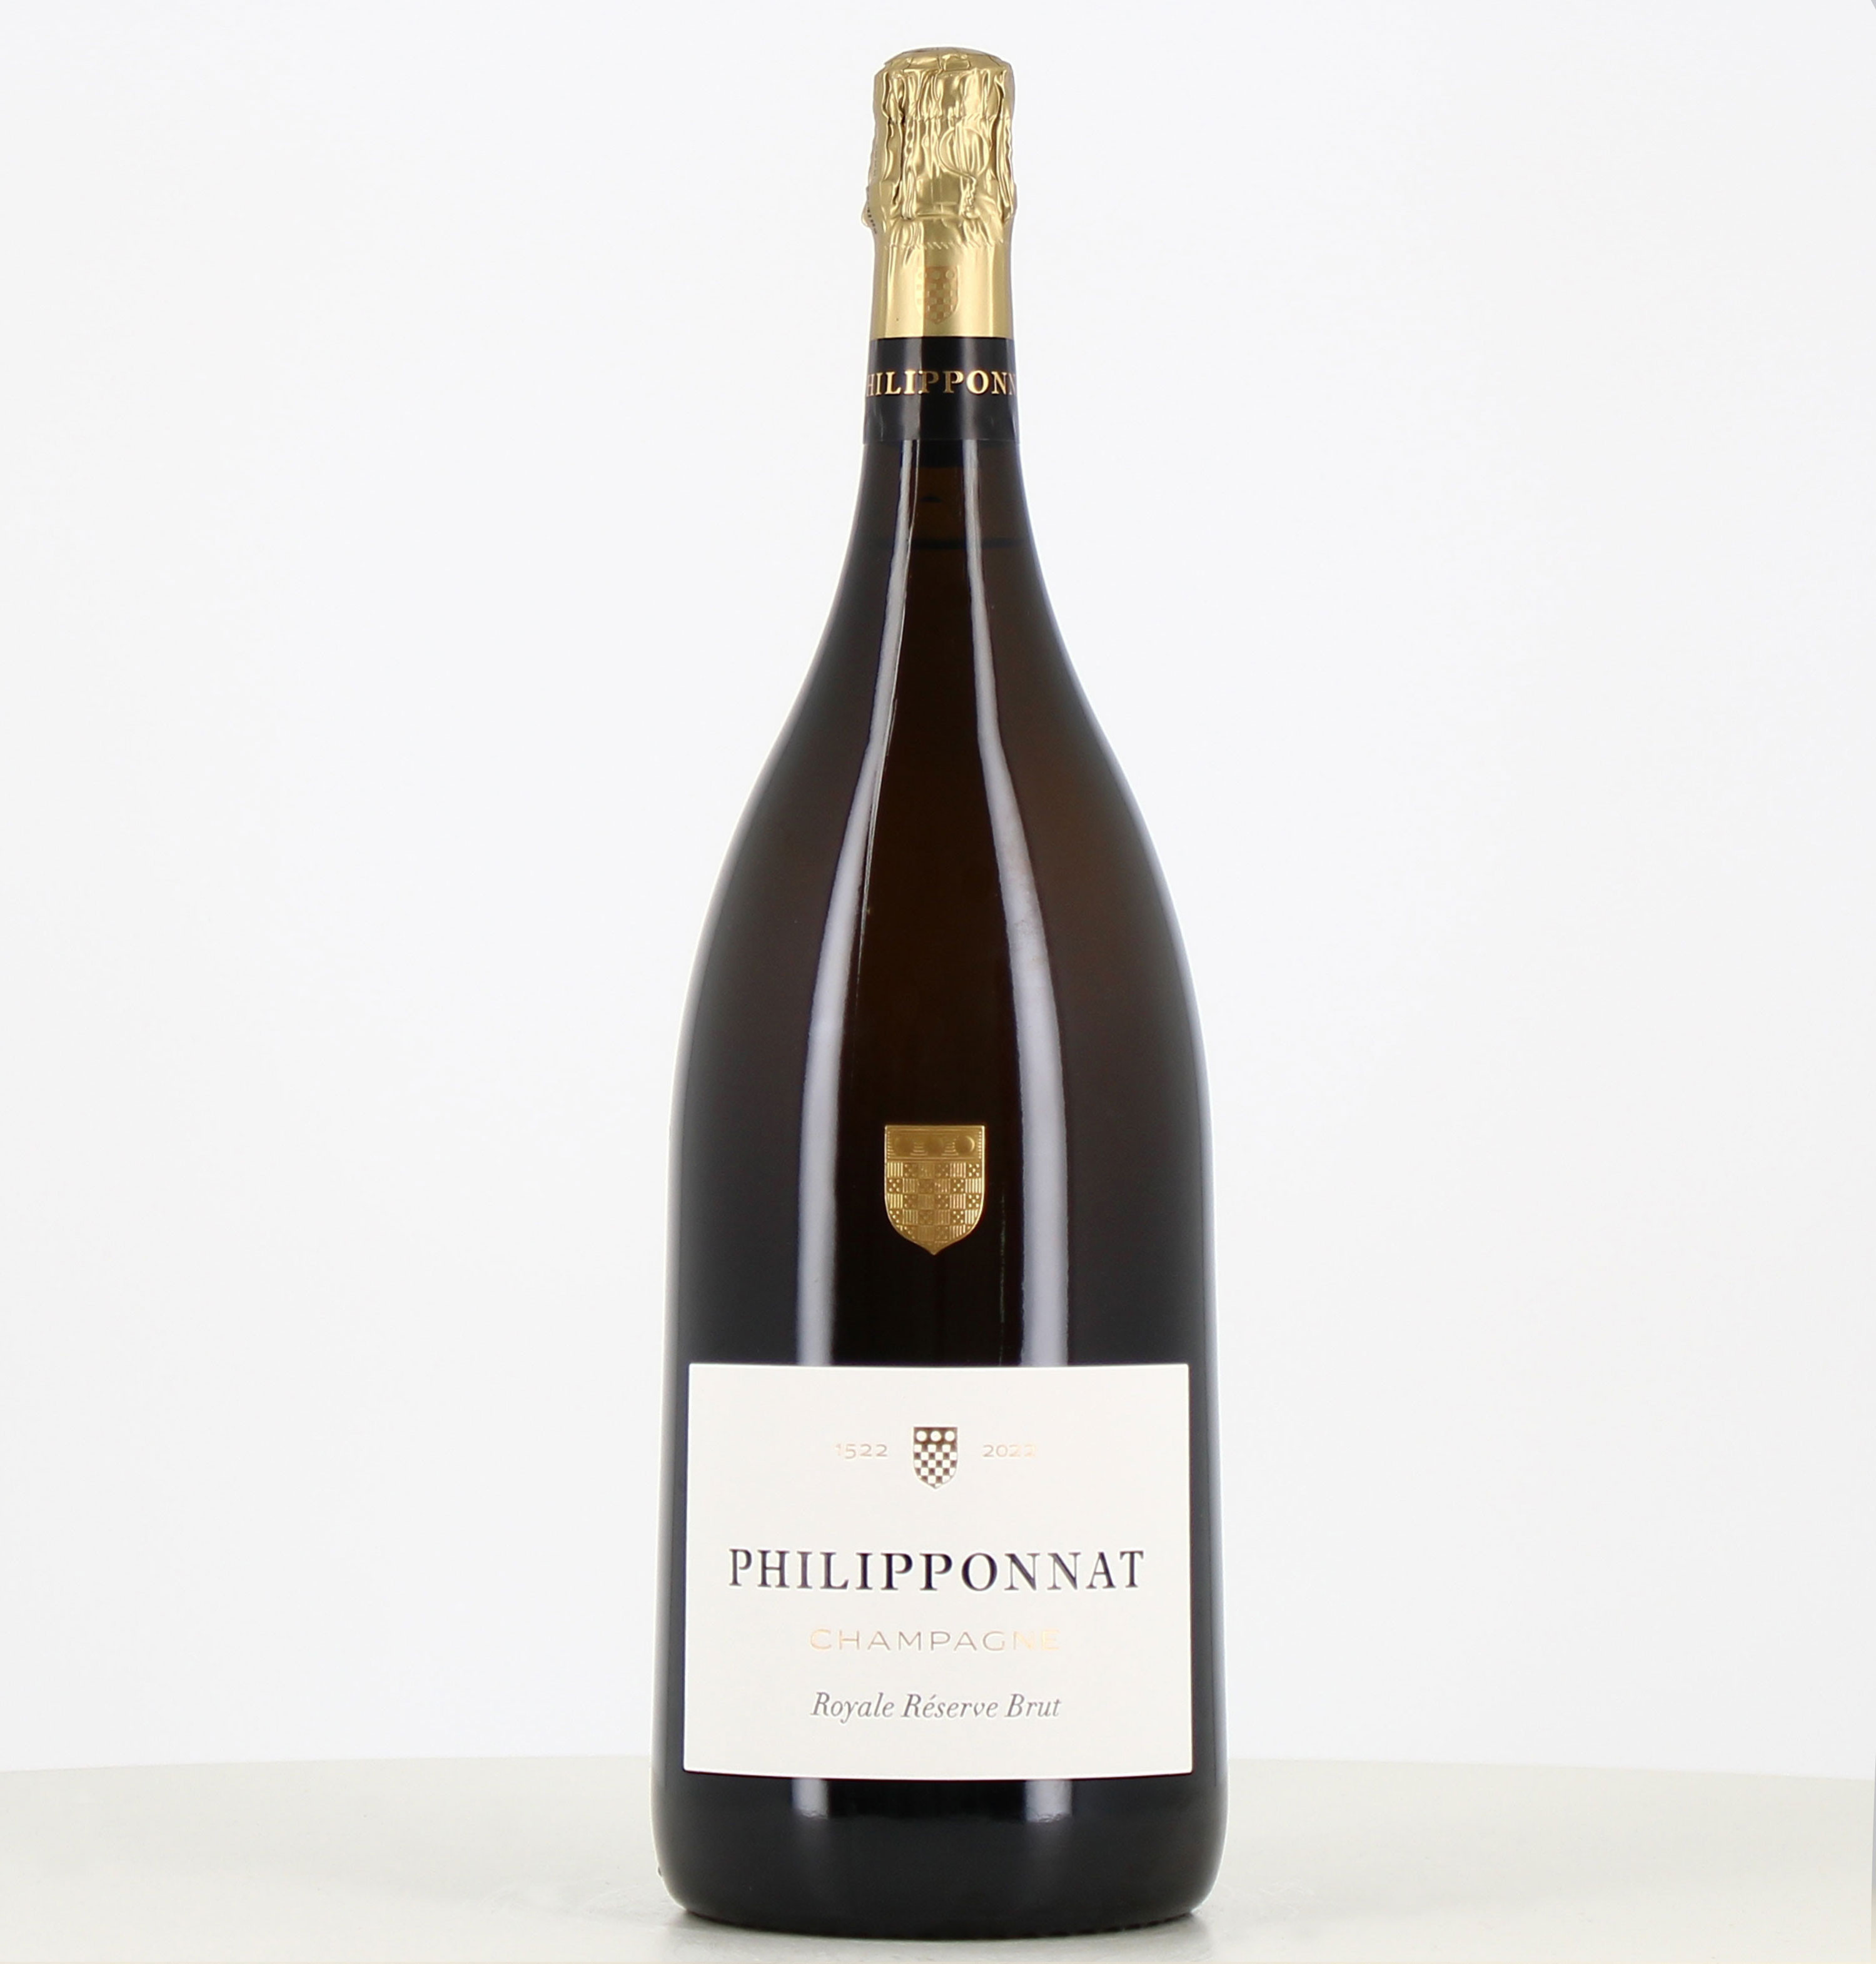 Salmanazar Champagne Philipponnat Royale Réserve Brut 